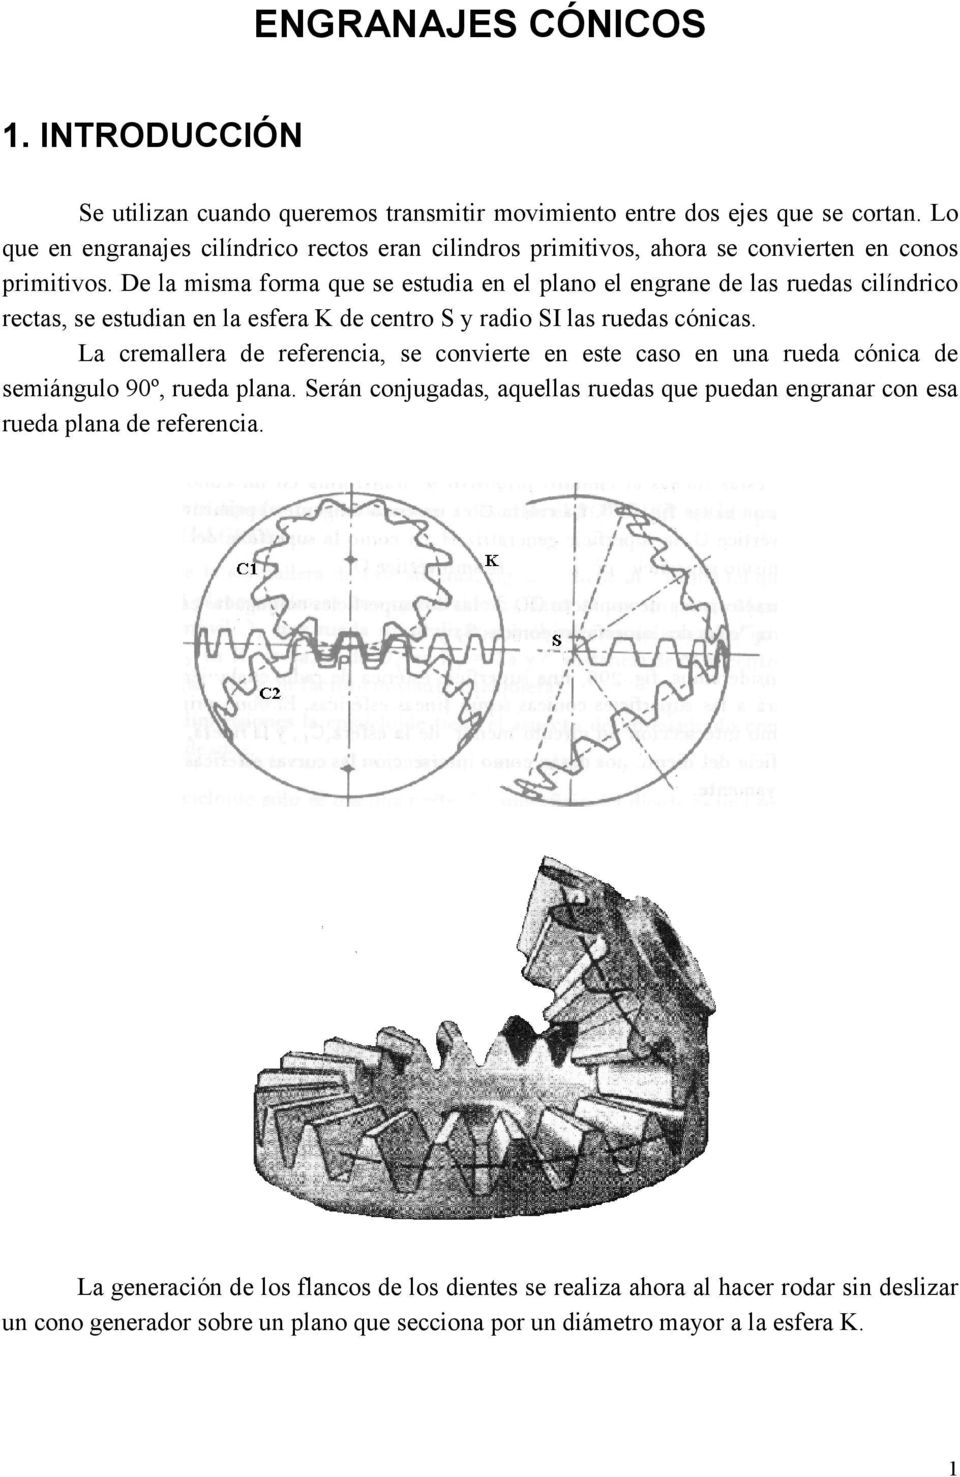 De la misma forma que se estudia en el plano el engrane de las ruedas cilíndrico rectas, se estudian en la esfera K de centro y radio I las ruedas cónicas.